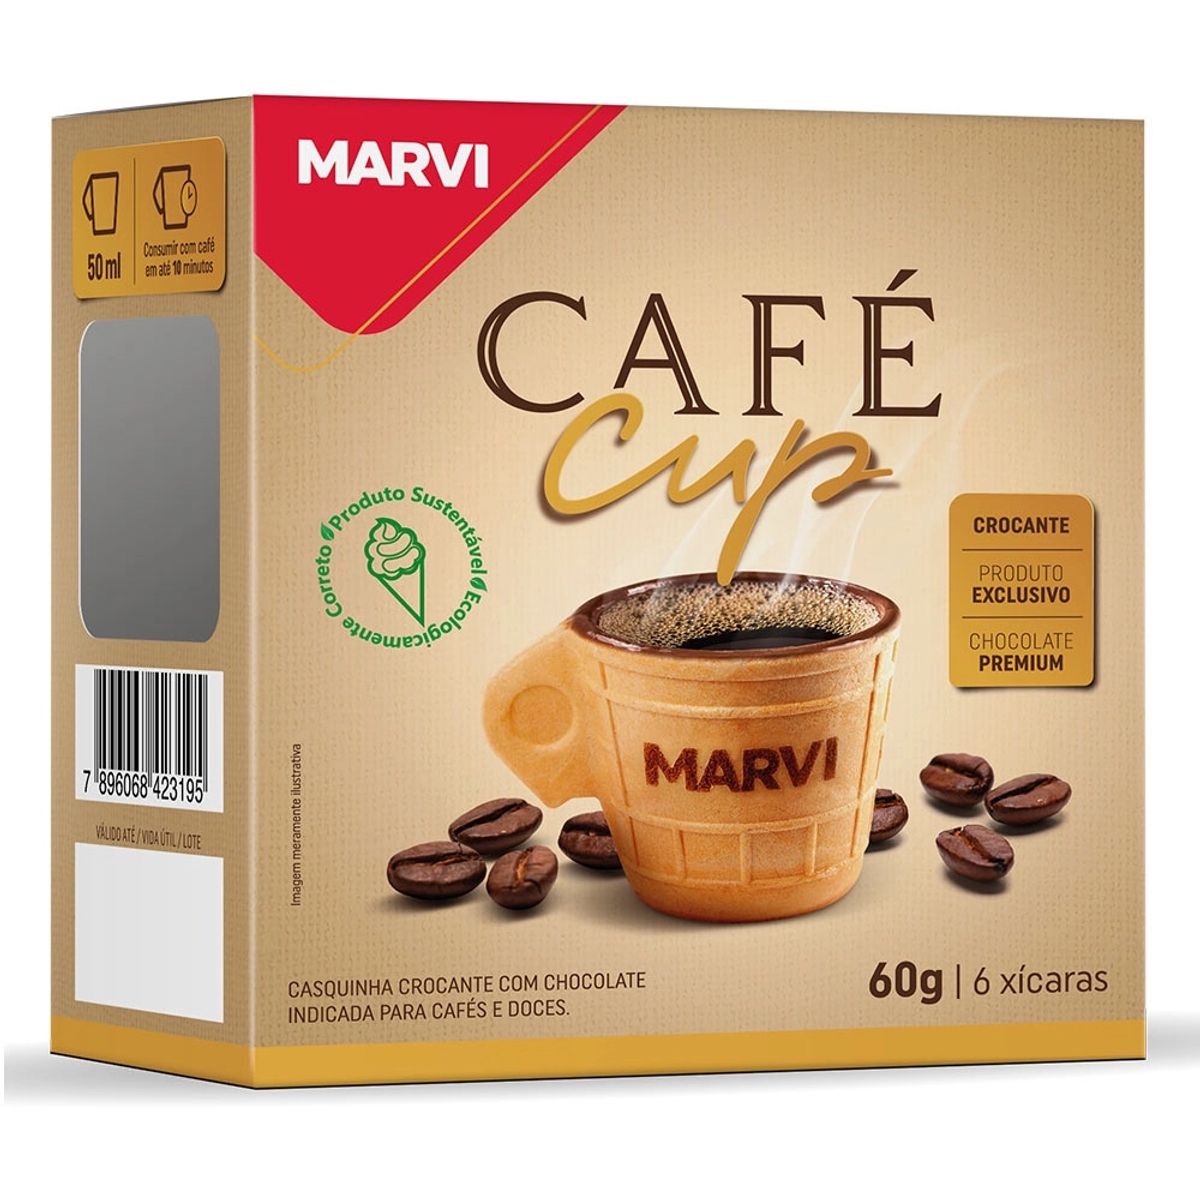 Casquinha Café Cup Marvi Crocante com Chocolate 60g 6 Unidades de 50ml